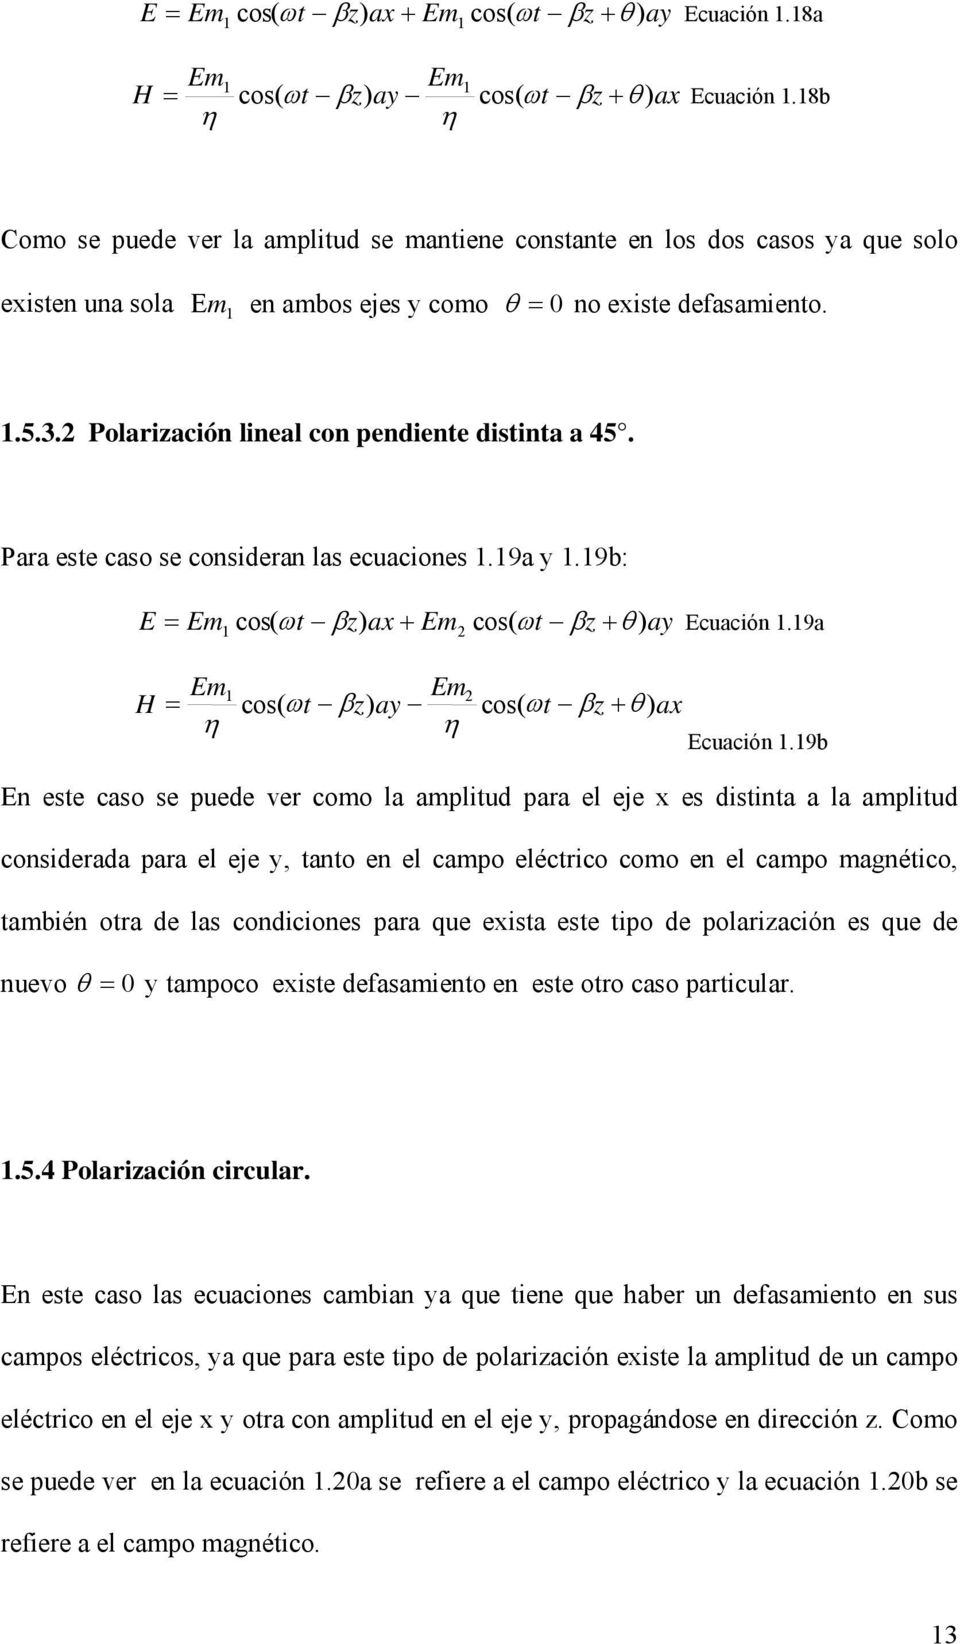 2 Polarización lineal con pendiente distinta a 45. Para este caso se consideran las ecuaciones 1.19a y 1.19b: E = 1 cos( ω t ) ax + 2 + θ ) ay Ecuación 1.19a 2 H = 1 cos( ω t ) ay + θ ) ax Ecuación 1.